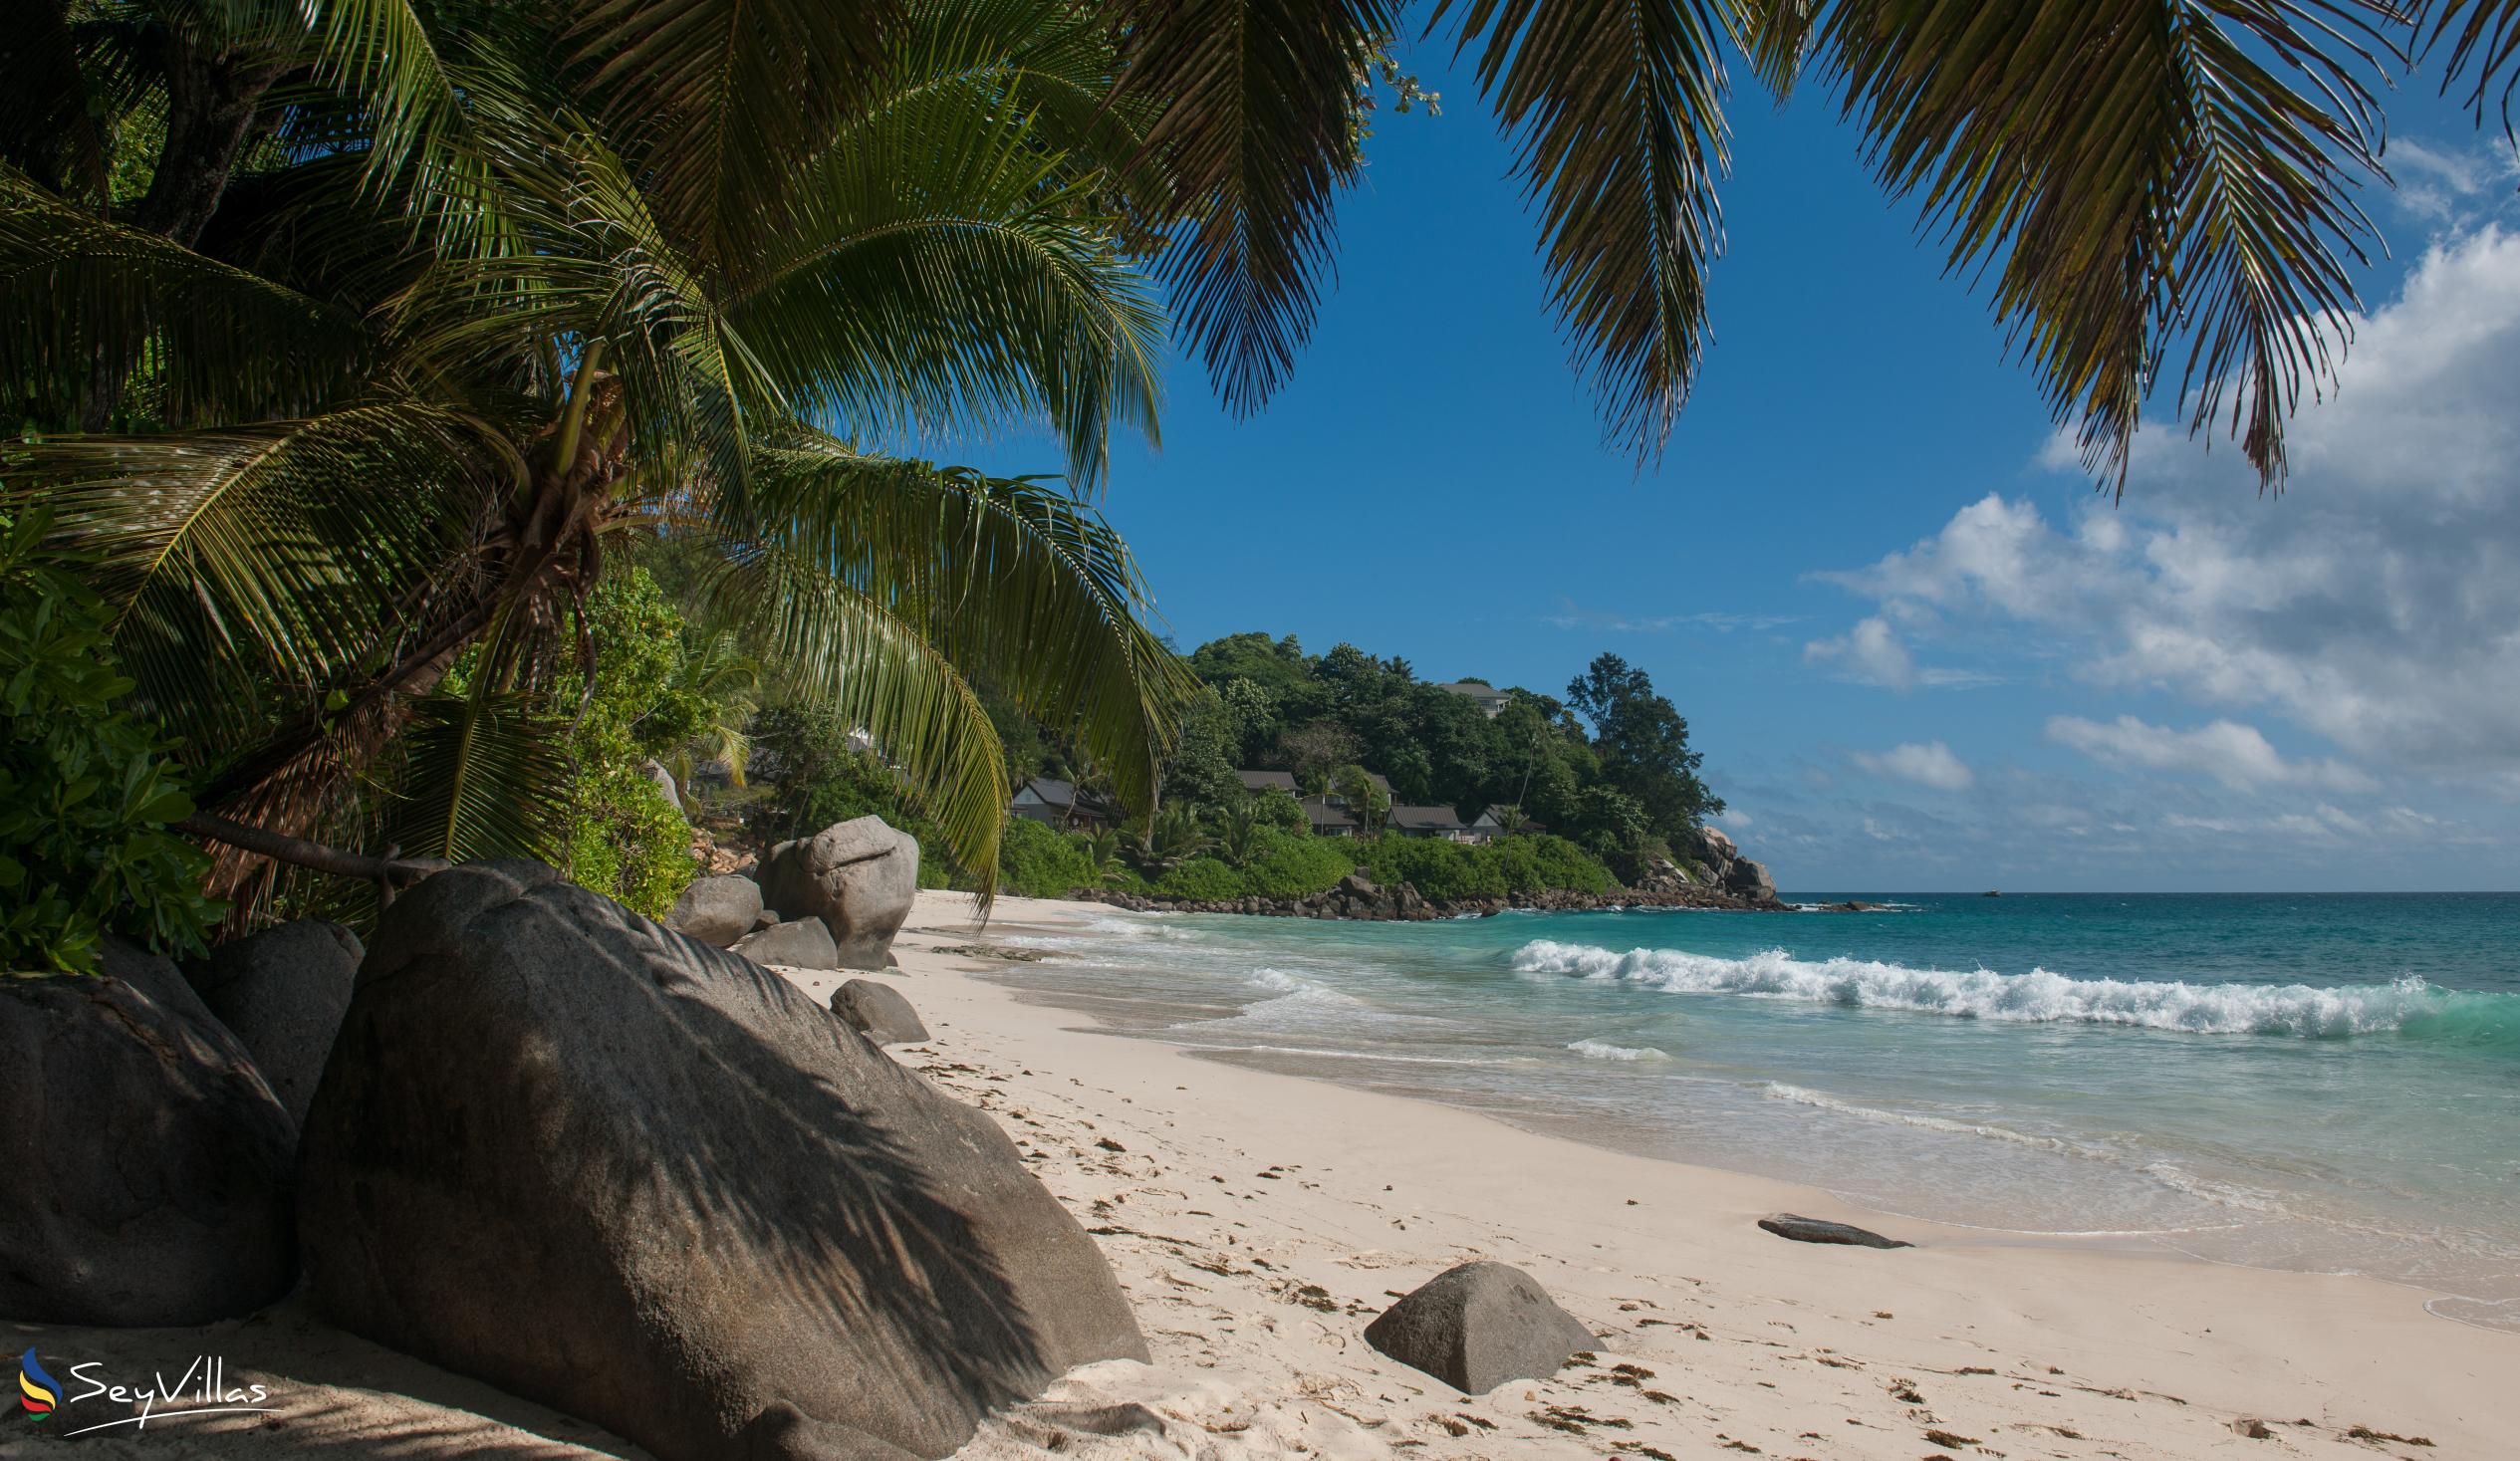 Foto 66: Carana Beach Hotel - Location - Mahé (Seychelles)